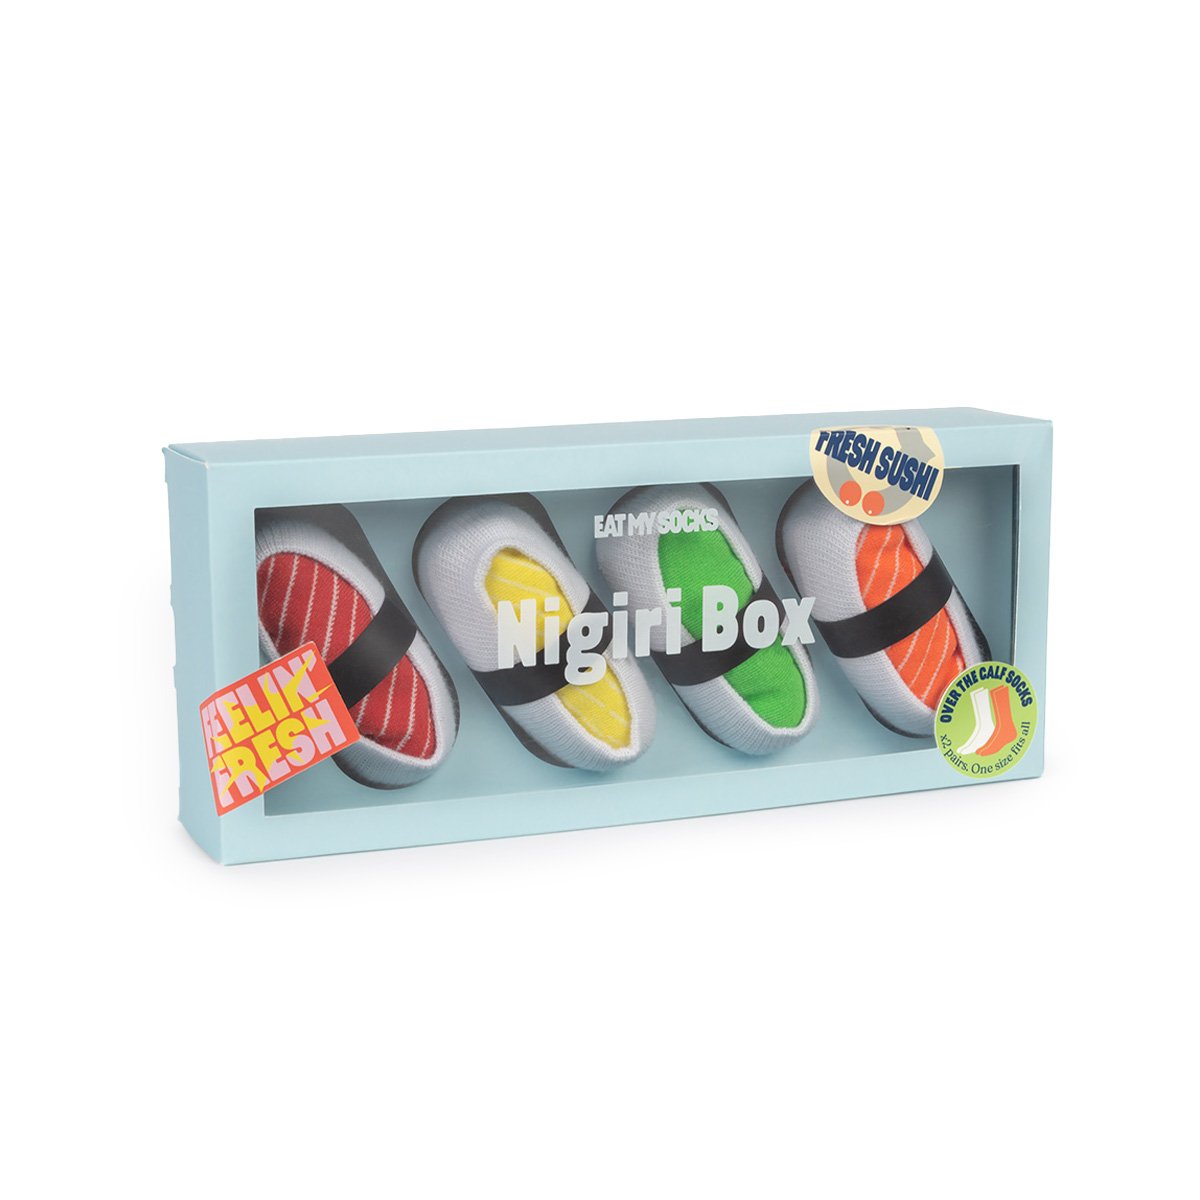 Nigiri Box